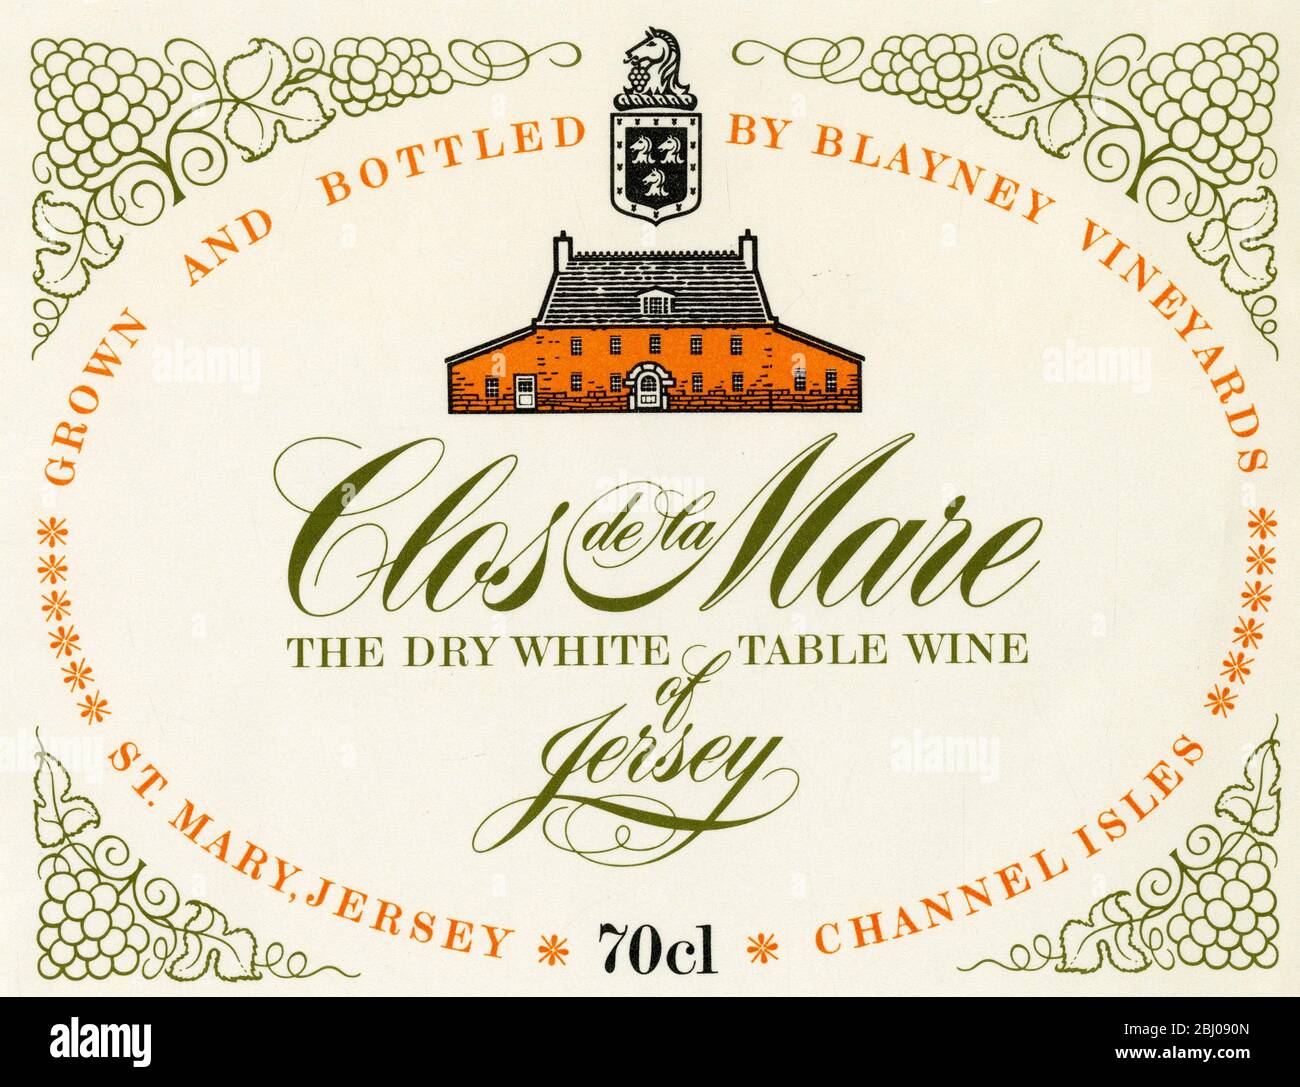 Etichetta vino - Clos de la Mare vino da tavola bianco secco. Coltivato e imbottigliato da Blayney Vineyards, St Mary, Jersey. - 1975 - Foto Stock